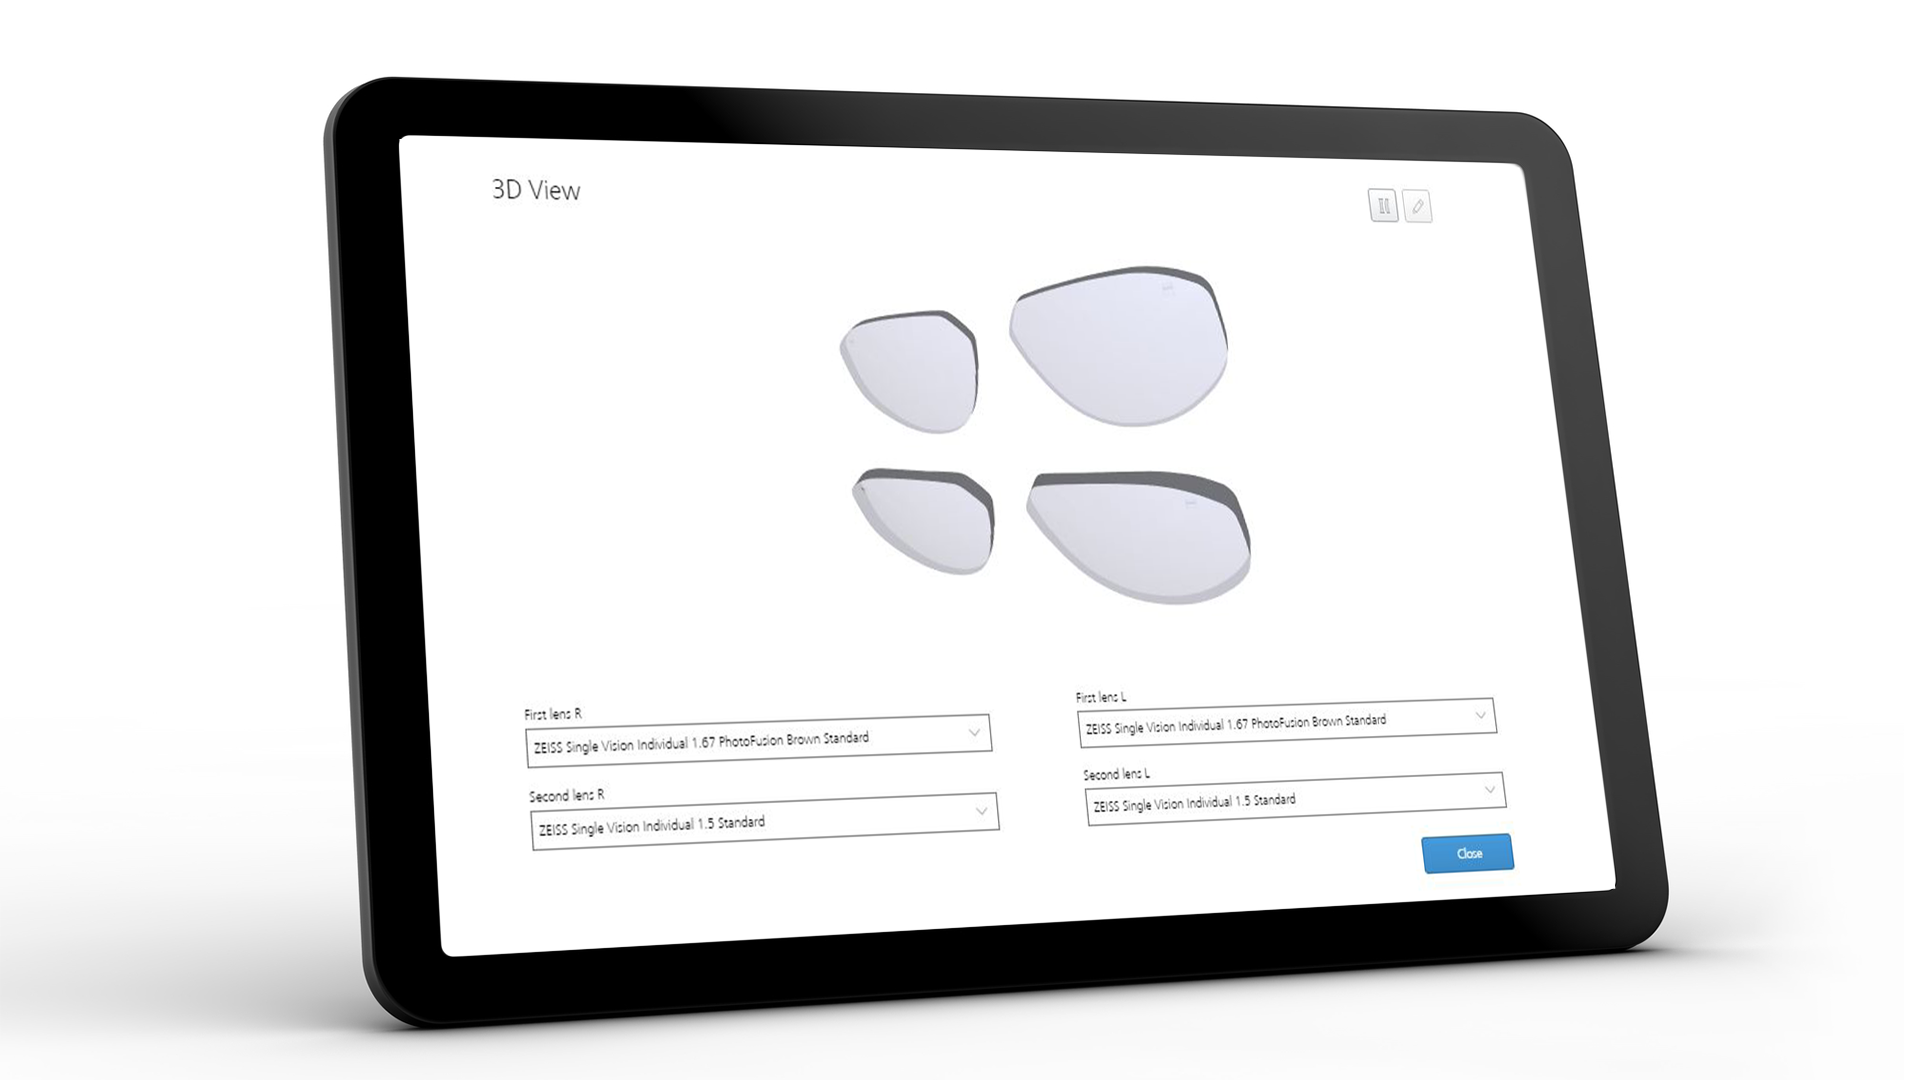 Ekran tabletu przedstawiający interfejs ZEISS VISUSTORE dla widoku 3D 